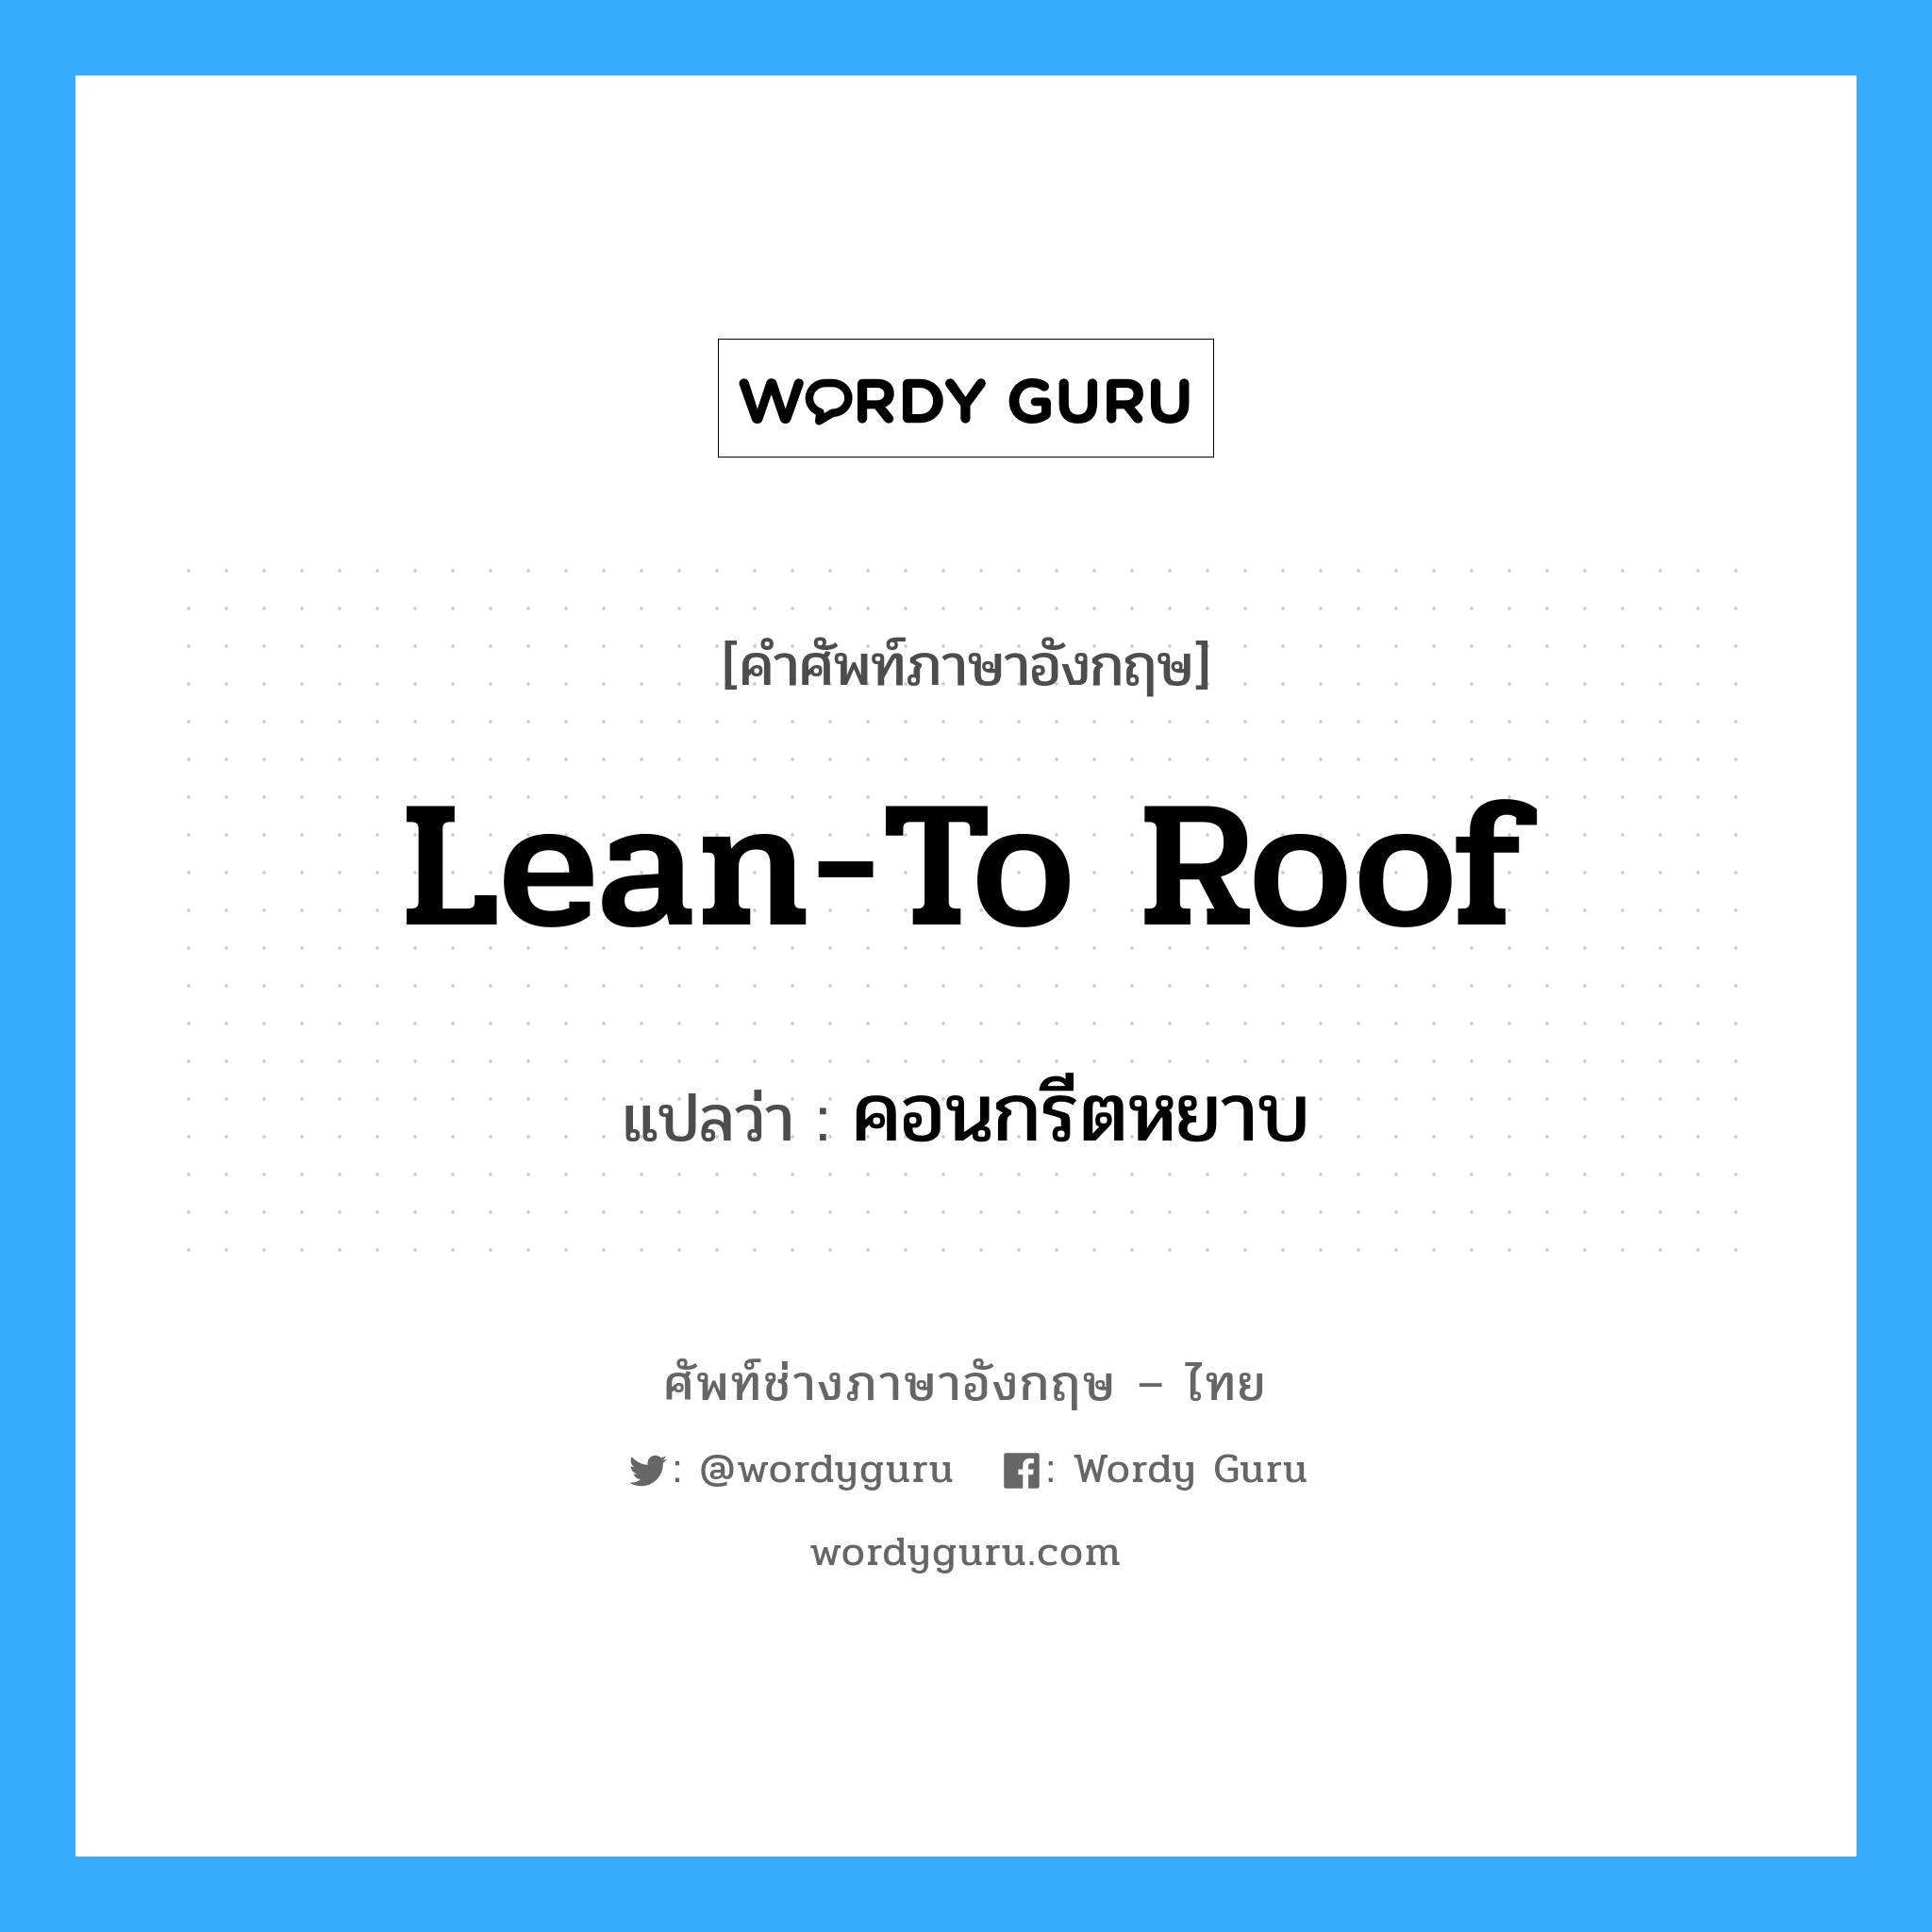 lean-to roof แปลว่า?, คำศัพท์ช่างภาษาอังกฤษ - ไทย lean-to roof คำศัพท์ภาษาอังกฤษ lean-to roof แปลว่า คอนกรีตหยาบ